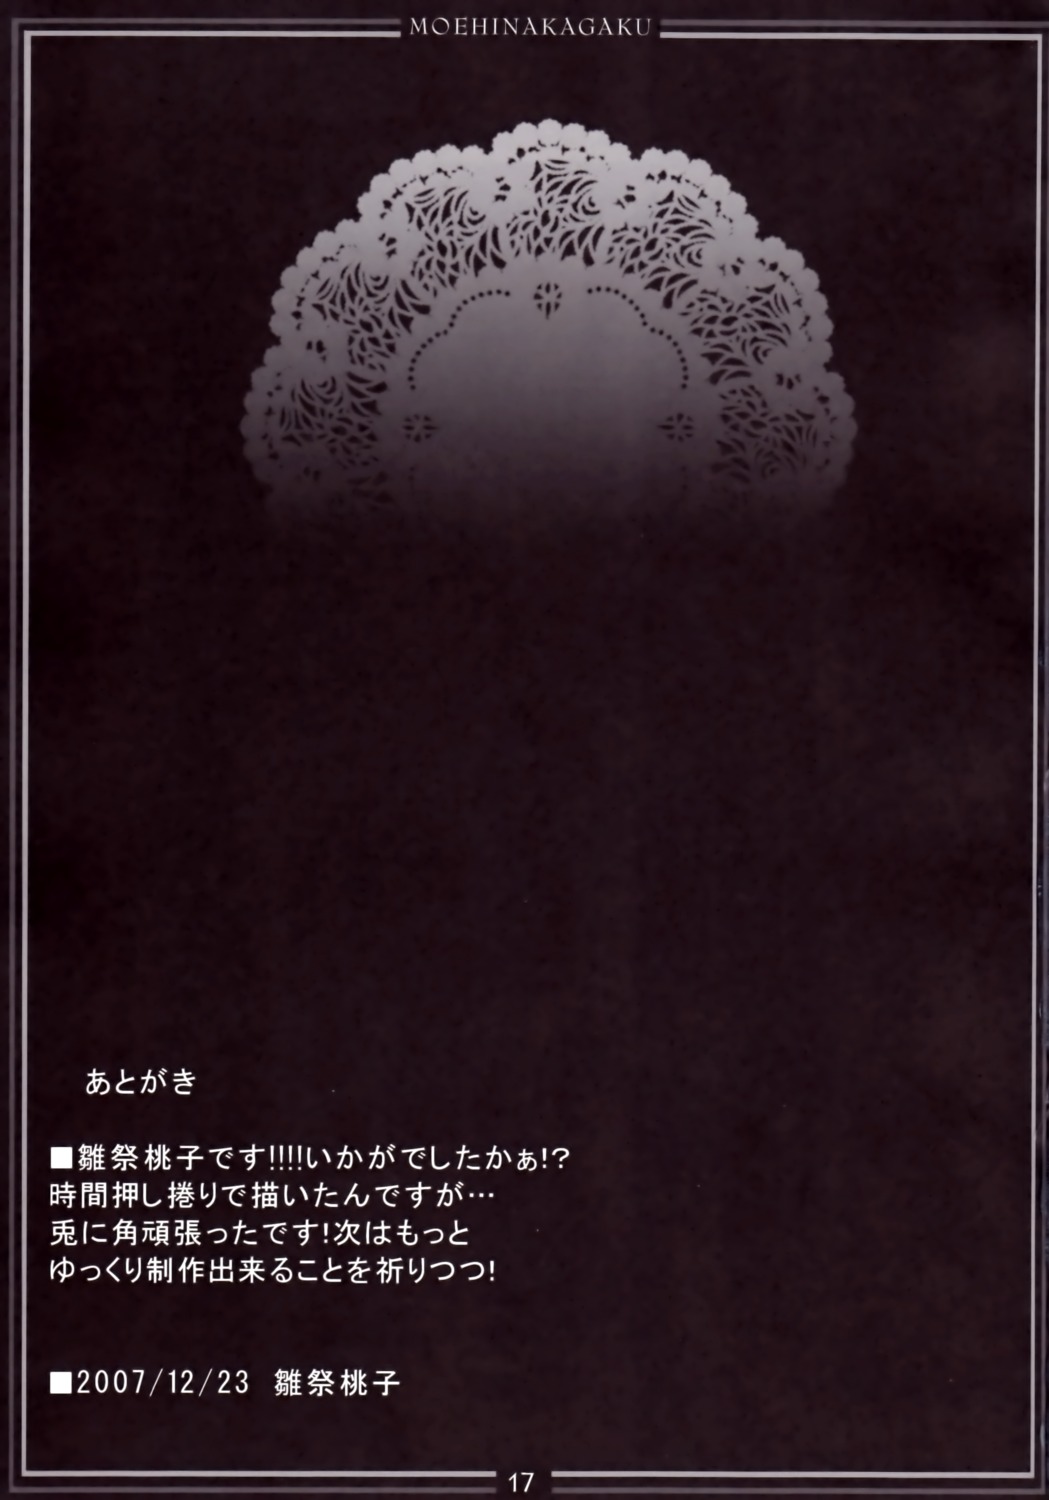 hinamatsuri_touko moehina_kagaku monochrome text